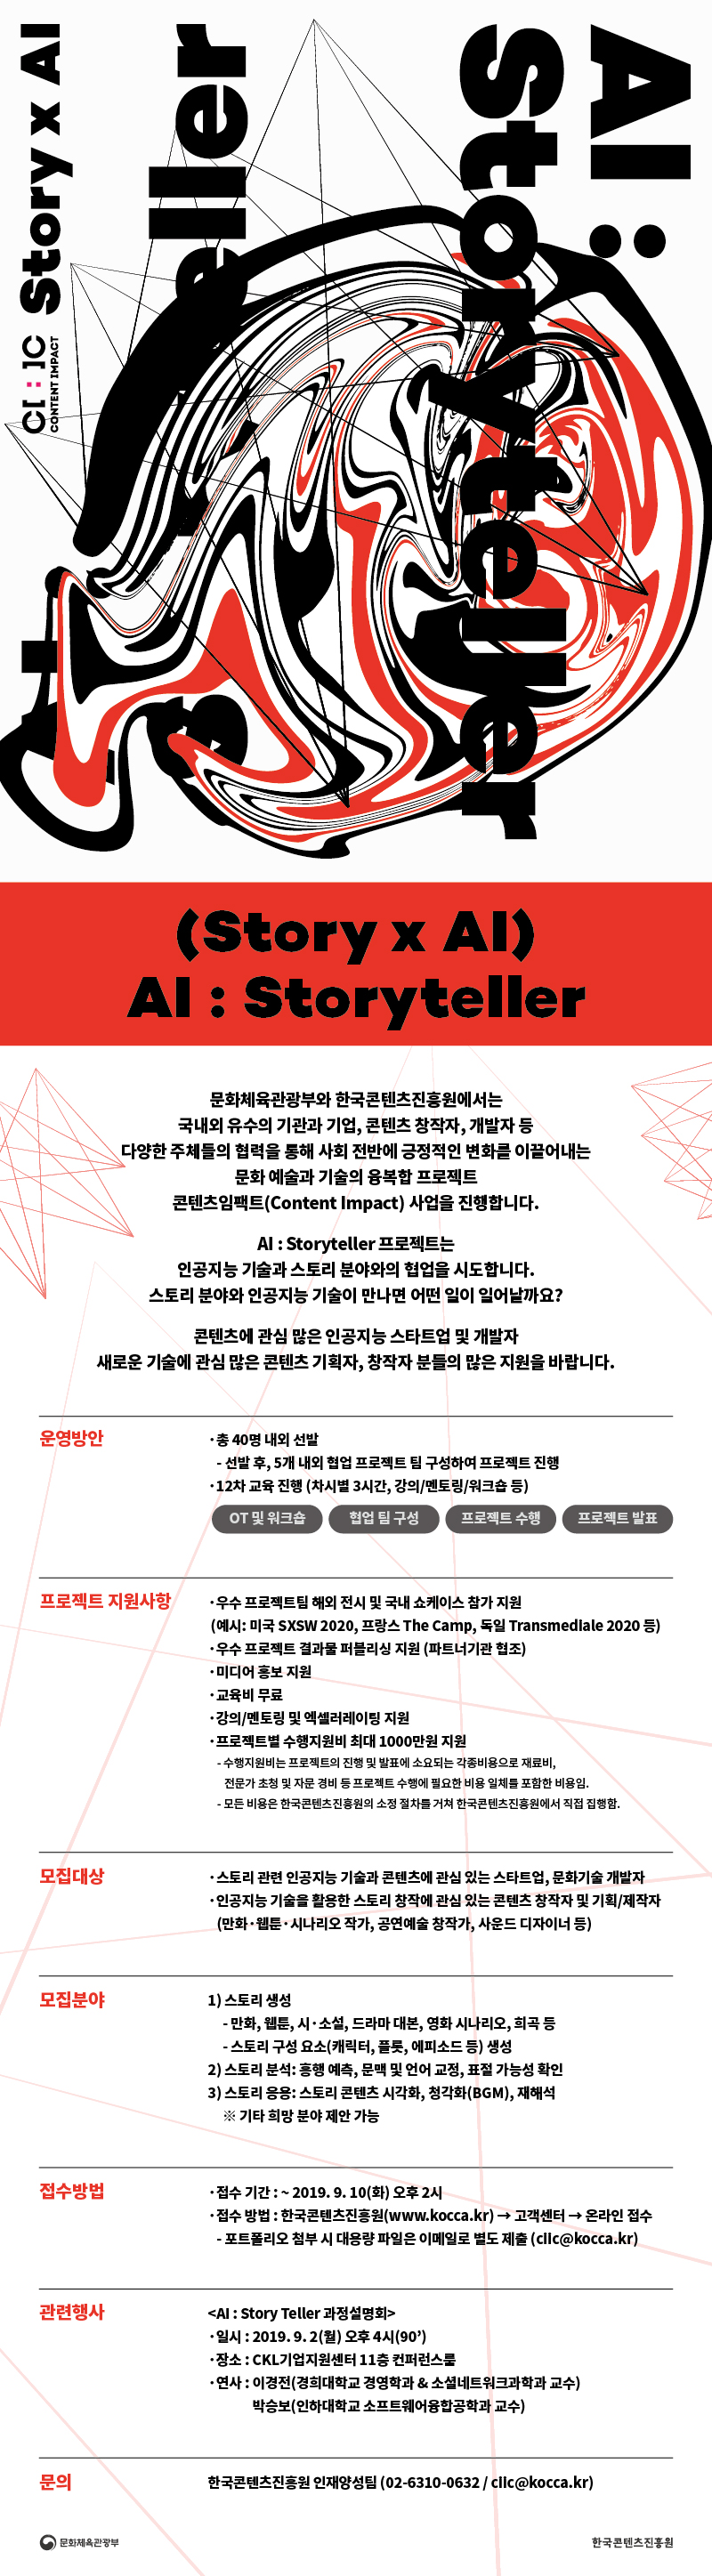 (Story x AI) AI : Storyteller

AI : Storyteller 프로젝트는
인공지능 기술과 스토리 분야와의 협업을 시도합니다. 
스토리 분야와 인공지능 기술이 만나면 어떤 일이 일어날까요? 

콘텐츠에 관심 많은 인공지능 스타트업 및 개발자
새로운 기술에 관심 많은 콘텐츠 기획자, 창작자 분들의 많은 지원을 바랍니다.   

운영방안  
총 40명 내외 선발 
선발 후, 5개 내외 협업 프로젝트 팀 구성하여 프로젝트 진행  
12차 교육 진행 (차시별 3시간, 강의/멘토링/워크숍 등) 

프로젝트 지원사항
우수 프로젝트팀 해외 전시 및 국내 쇼케이스 참가 지원 
우수 프로젝트 결과물 퍼블리싱 지원 (파트너기관 협조)
교육비 무료 
강의/멘토링 및 엑셀러레이팅 지원
프로젝트별 수행지원비 최대 1000만원 지원
미디어 홍보 지원

모집대상
스토리 관련 인공지능 기술과 콘텐츠에 관심 있는 스타트업, 문화기술 개발자 
인공지능 기술을 활용한 스토리 창작에 관심 있는 콘텐츠 창작자 및 기획/제작자 

모집분야 
스토리 생성
스토리 분석 : 흥행 예측, 문맥 및 언어 교정, 표절 가능성 확인
스토리 응용 : 스토리 콘텐츠 시각화, 청각화(BGM), 재해석
    ※ 기타 희망 분야 제안 가능

접수방법
접수 기간 : ~ 2019. 9. 10(화) 오후 2시
접수 방법 : 한국콘텐츠진흥원(www.kocca.kr) -> 고객센터 -> 온라인 접수 / 포트폴리오 첨부 시 대용량 파일은 이메일로 별도 제출 (ciic@kocca.kr)


관련행사 
<‘AI : Story Teller’ 과정설명회>
일시 : 2019. 9. 2(월) 오후 4시~5시 30분  
장소 : CKL기업지원센터 15층 라운지 

문의
한국콘텐츠진흥원 인재양성팀 (02-6310-0632 / ciic@kocca.kr)
